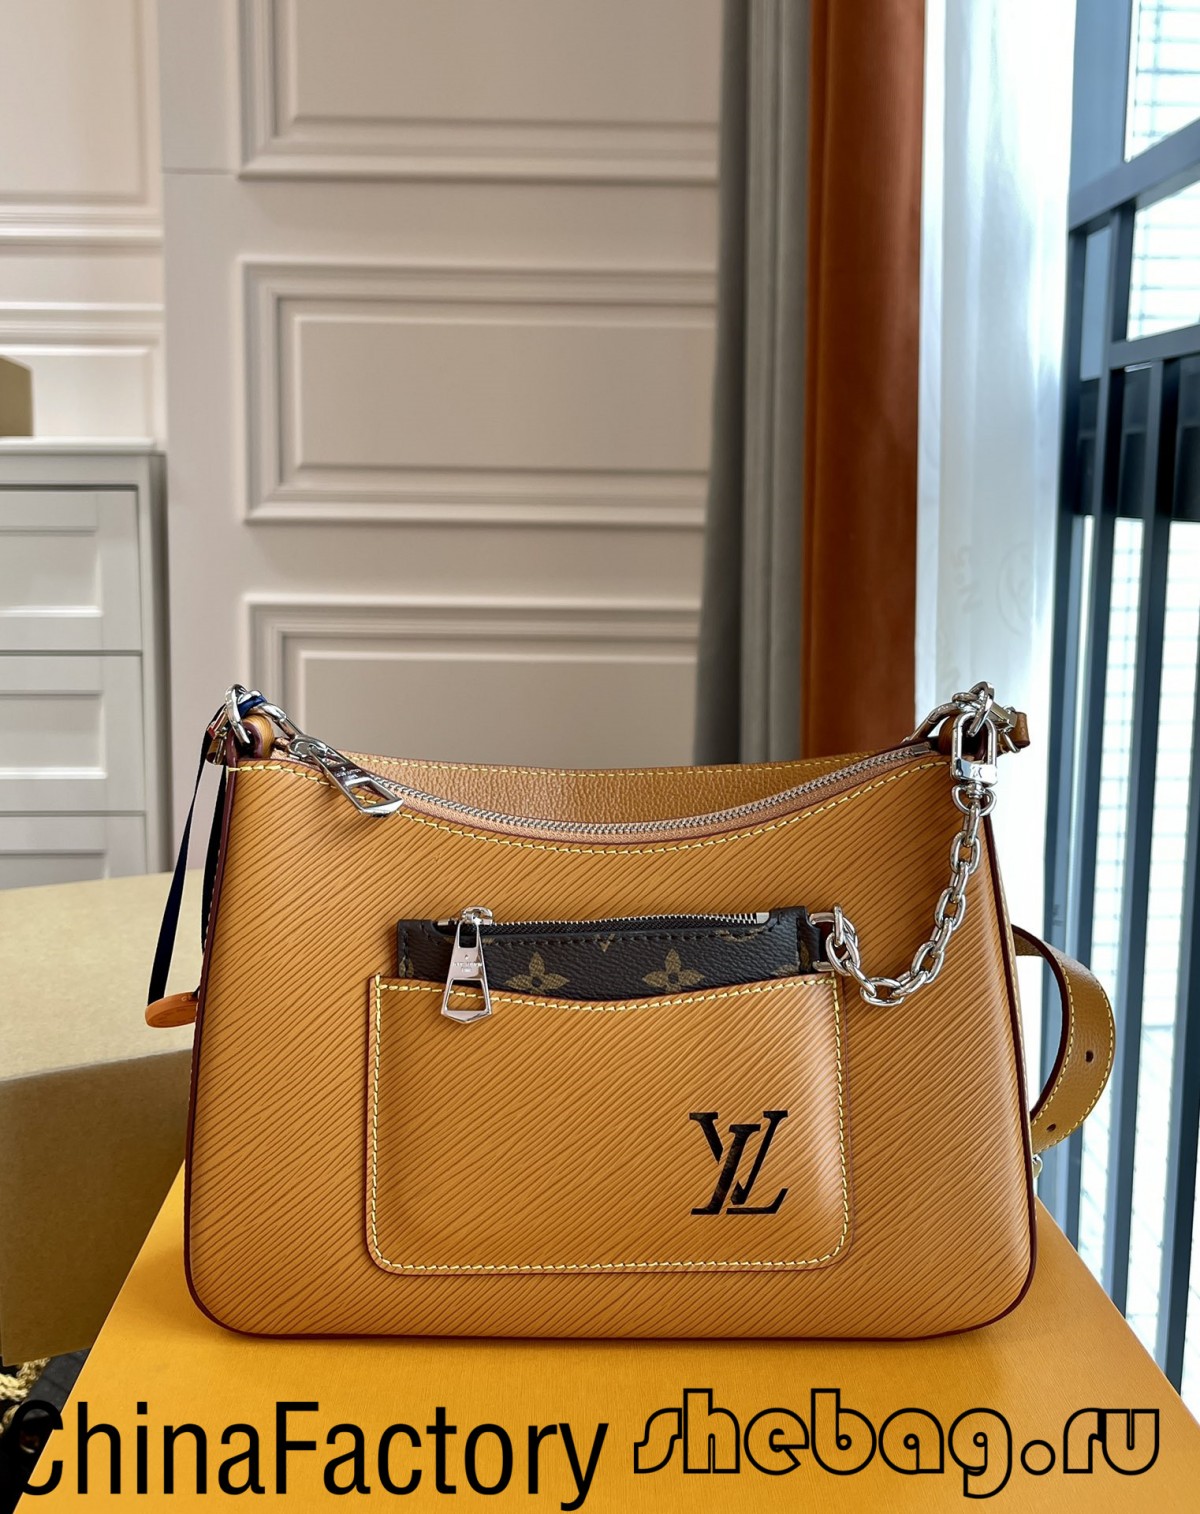 Кращі копії дизайнерських сумок, які варто придбати: сумка Should (Останній 2022 р.) - Інтернет-магазин підробленої сумки Louis Vuitton найкращої якості, Копія дизайнерської сумки ru